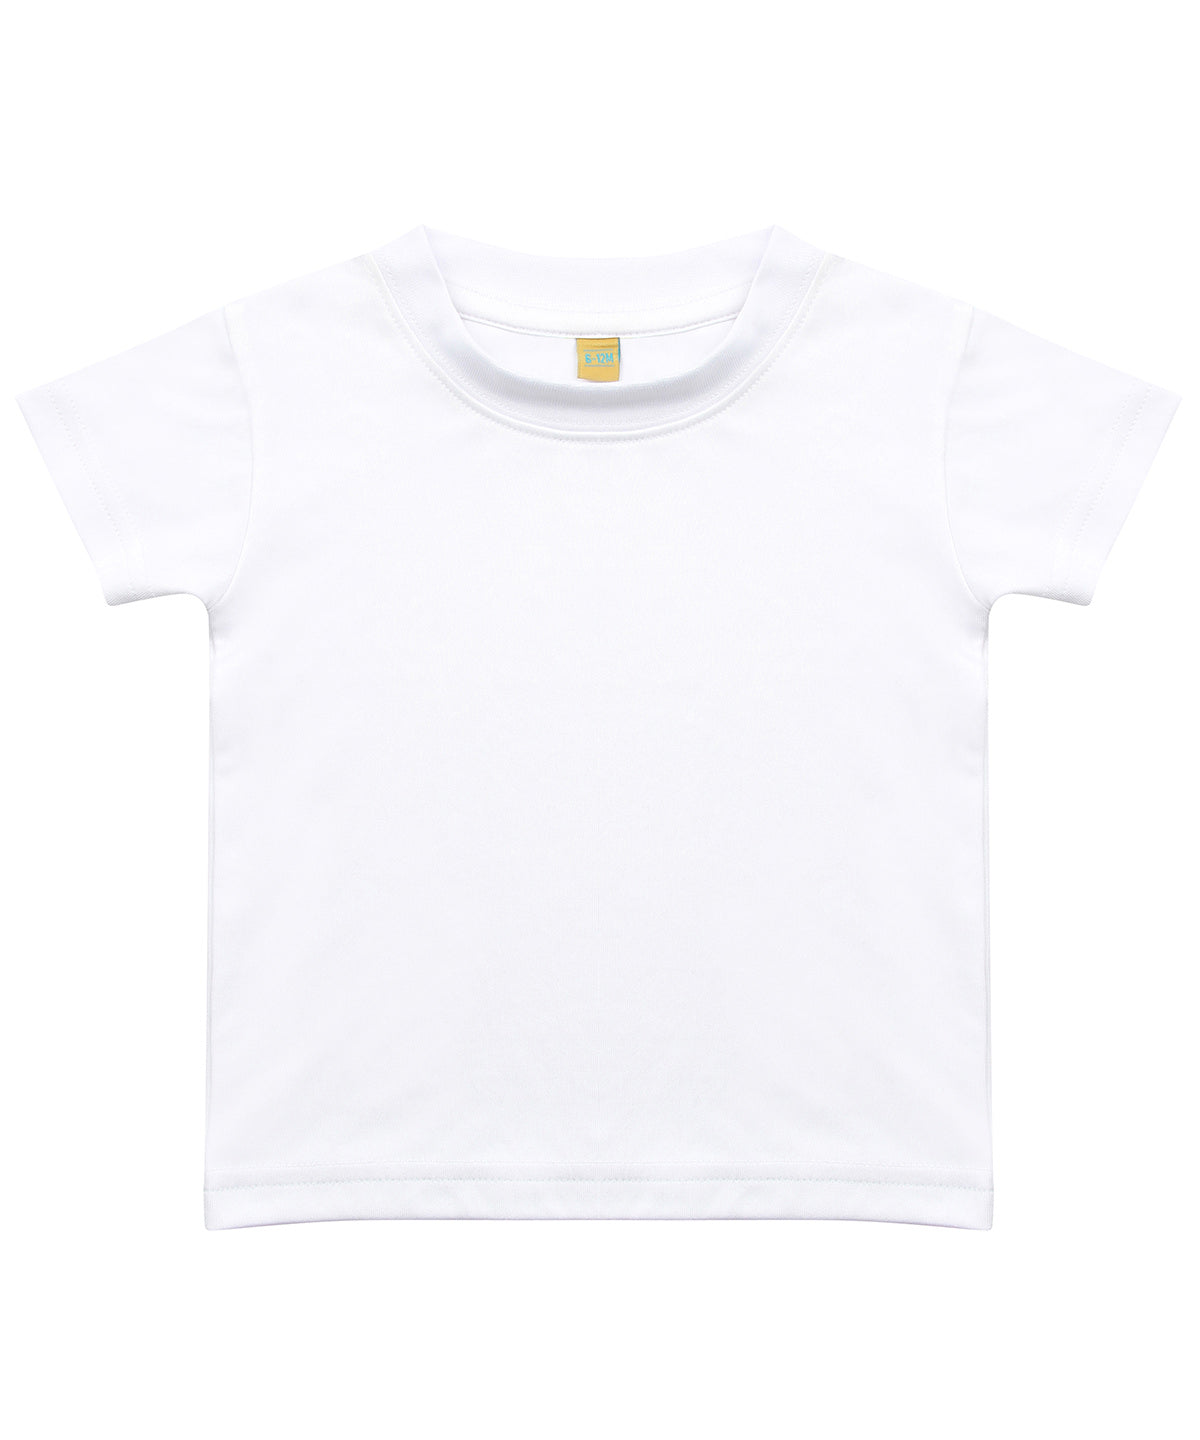 Personalised T-Shirts - Fuchsia Larkwood Baby/toddler t-shirt